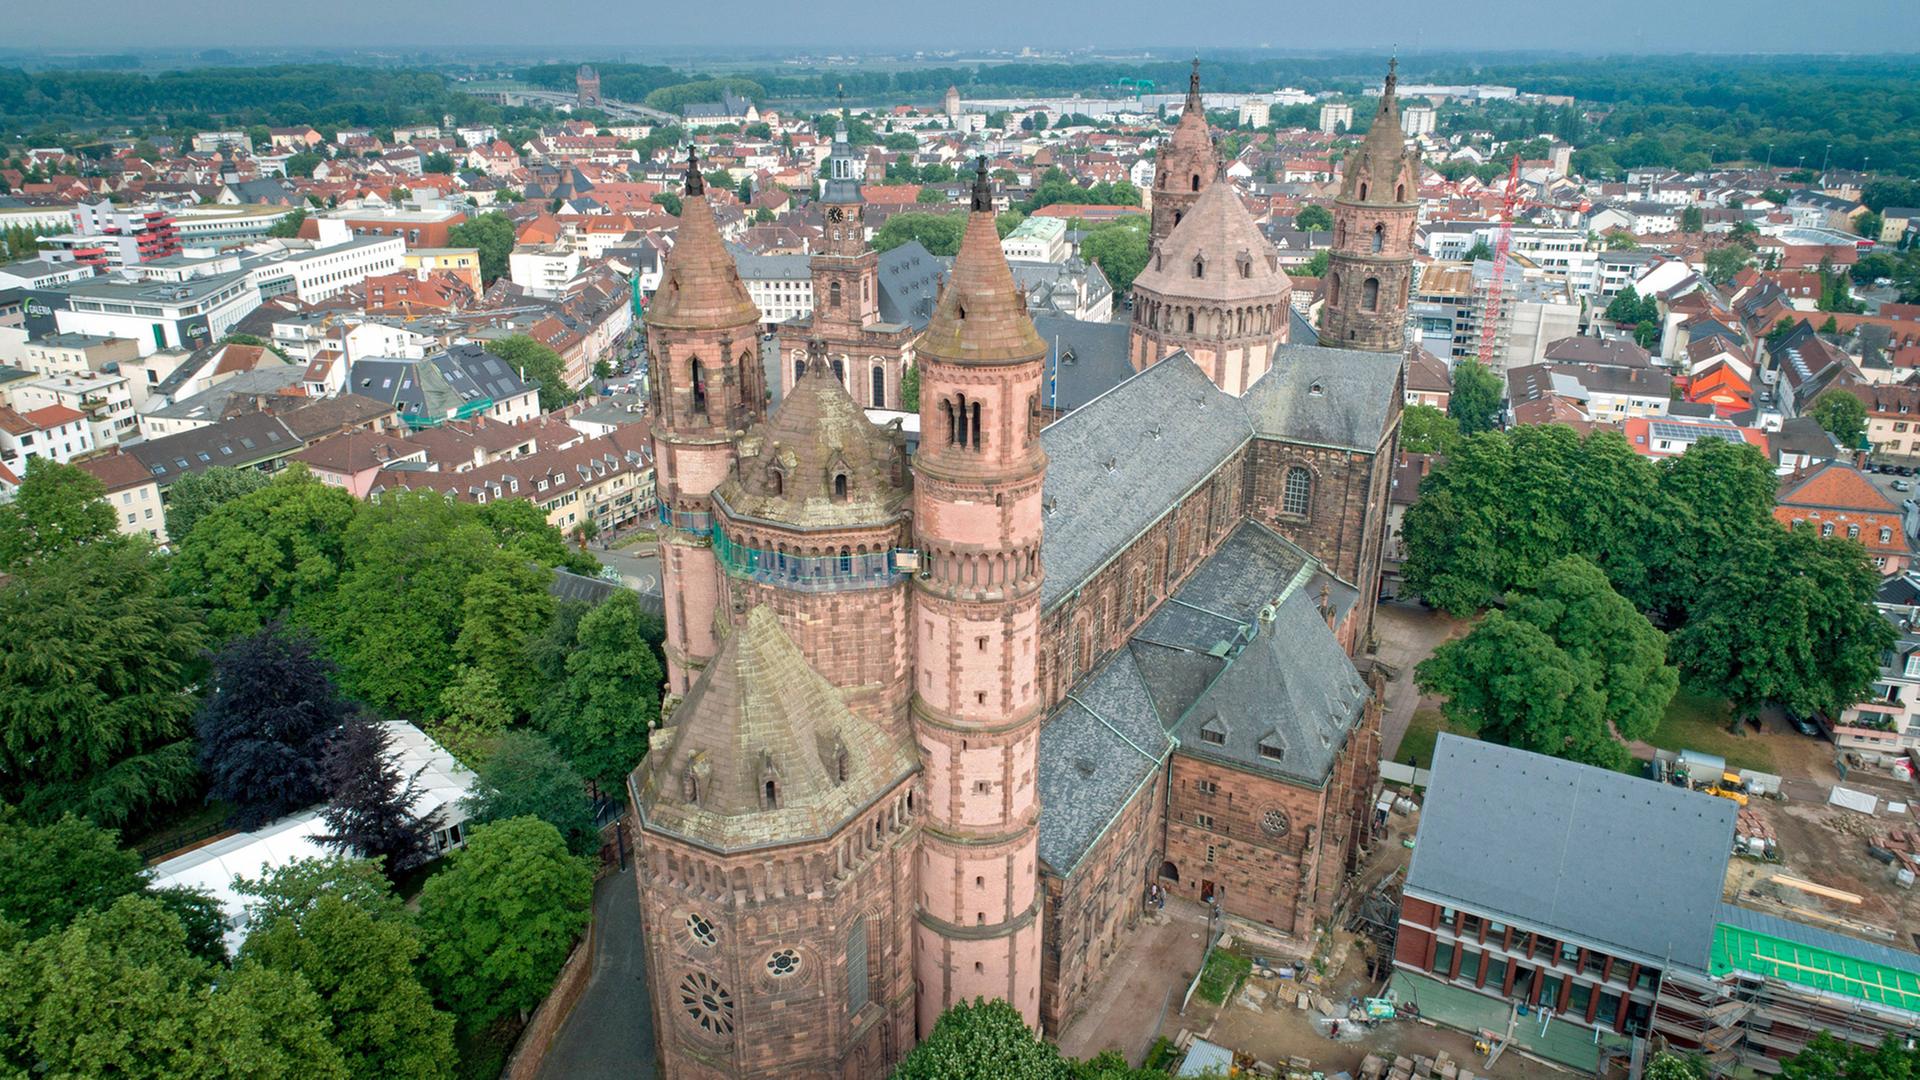 Luftaufnahme des Doms St. Peter zu Worms: Als einer der Kaiserdome am Rhein - die beiden anderen stehen in Mainz und Speyer - gilt der Wormser Dom als Meisterstück mittelalterlicher Baukunst.